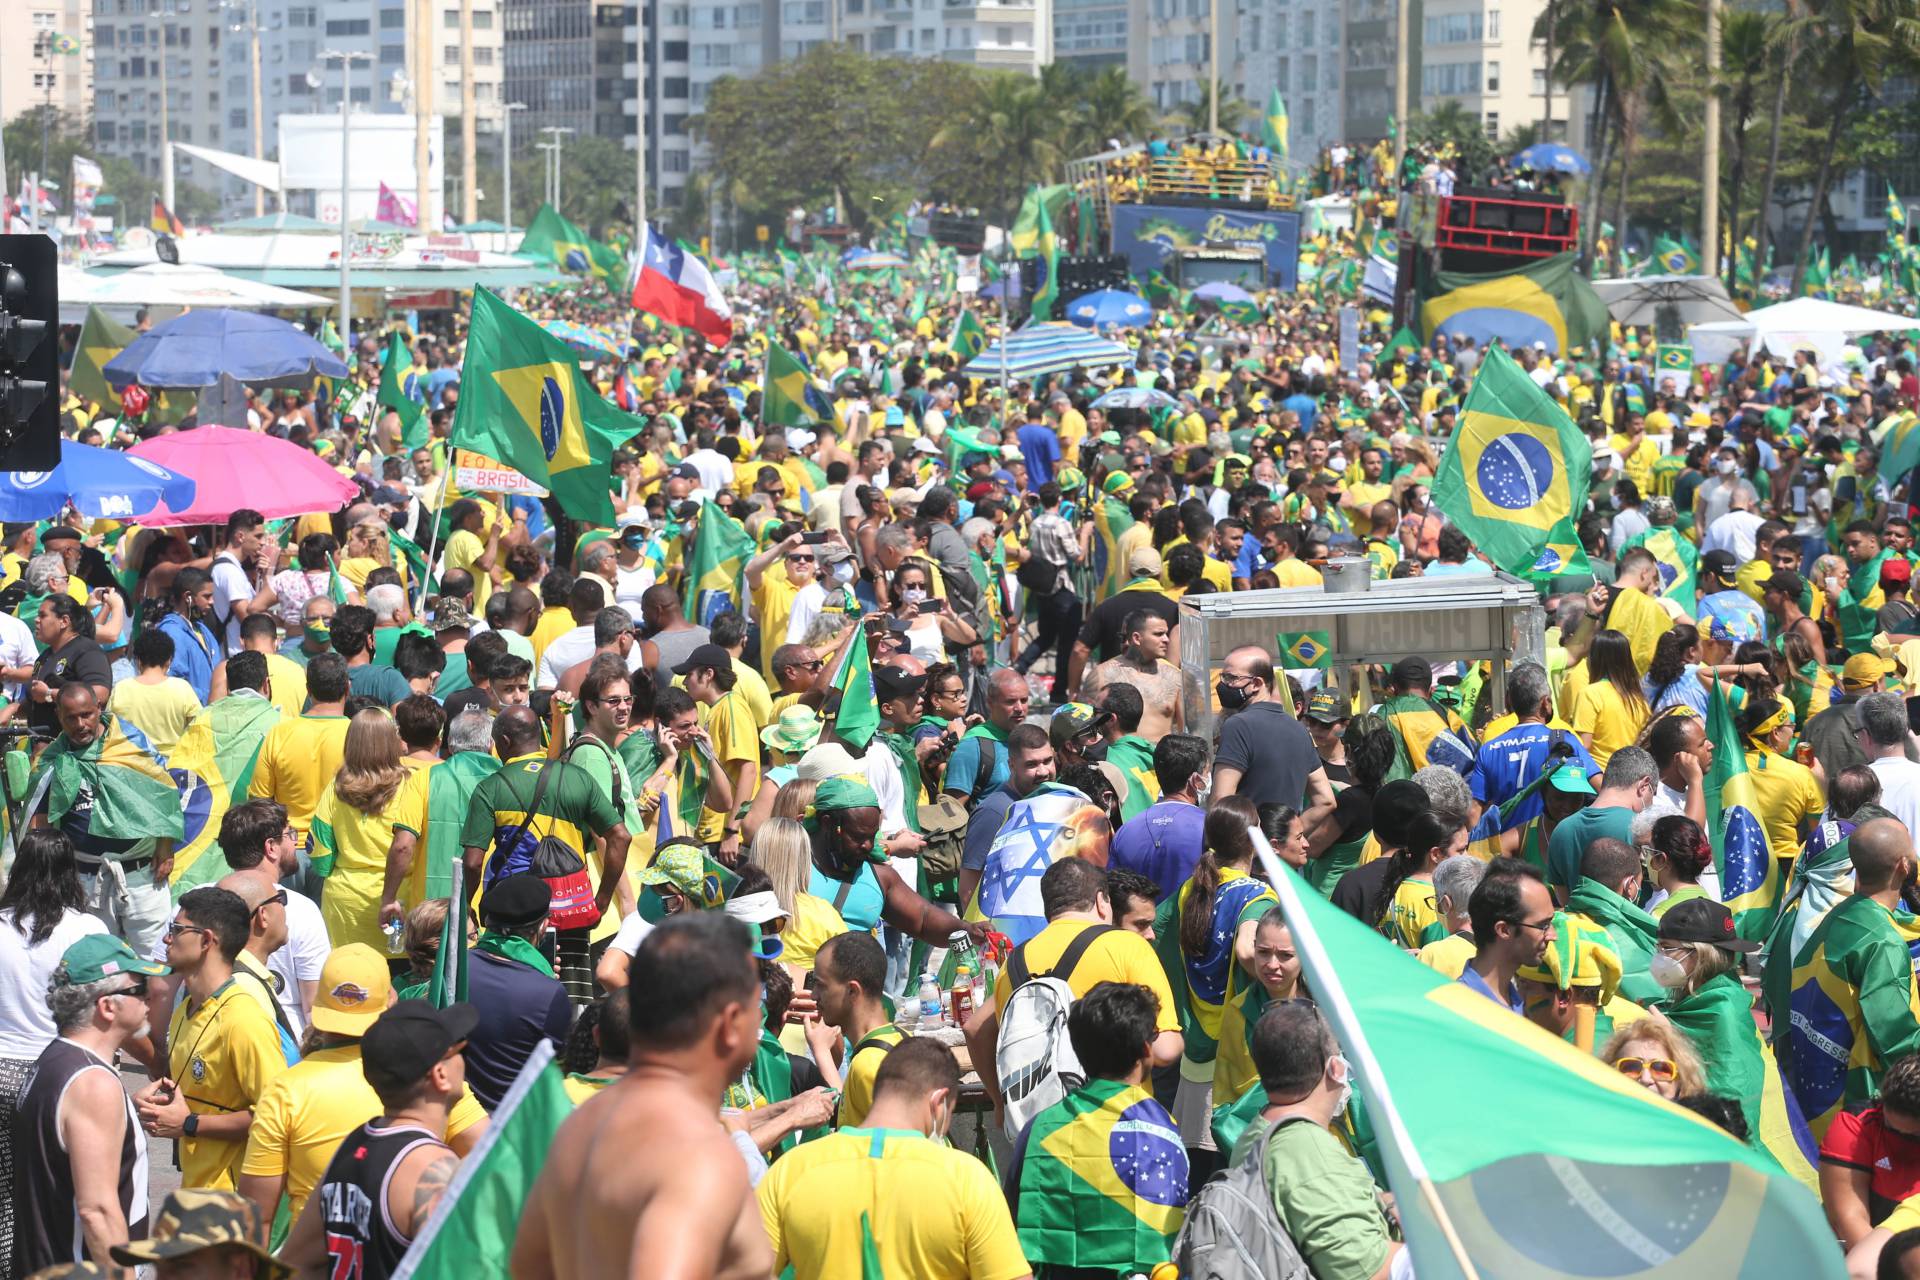 Em possível fusão dos partidos, DEM e PSL divulgam nota em conjunto contra ataques de Bolsonaro